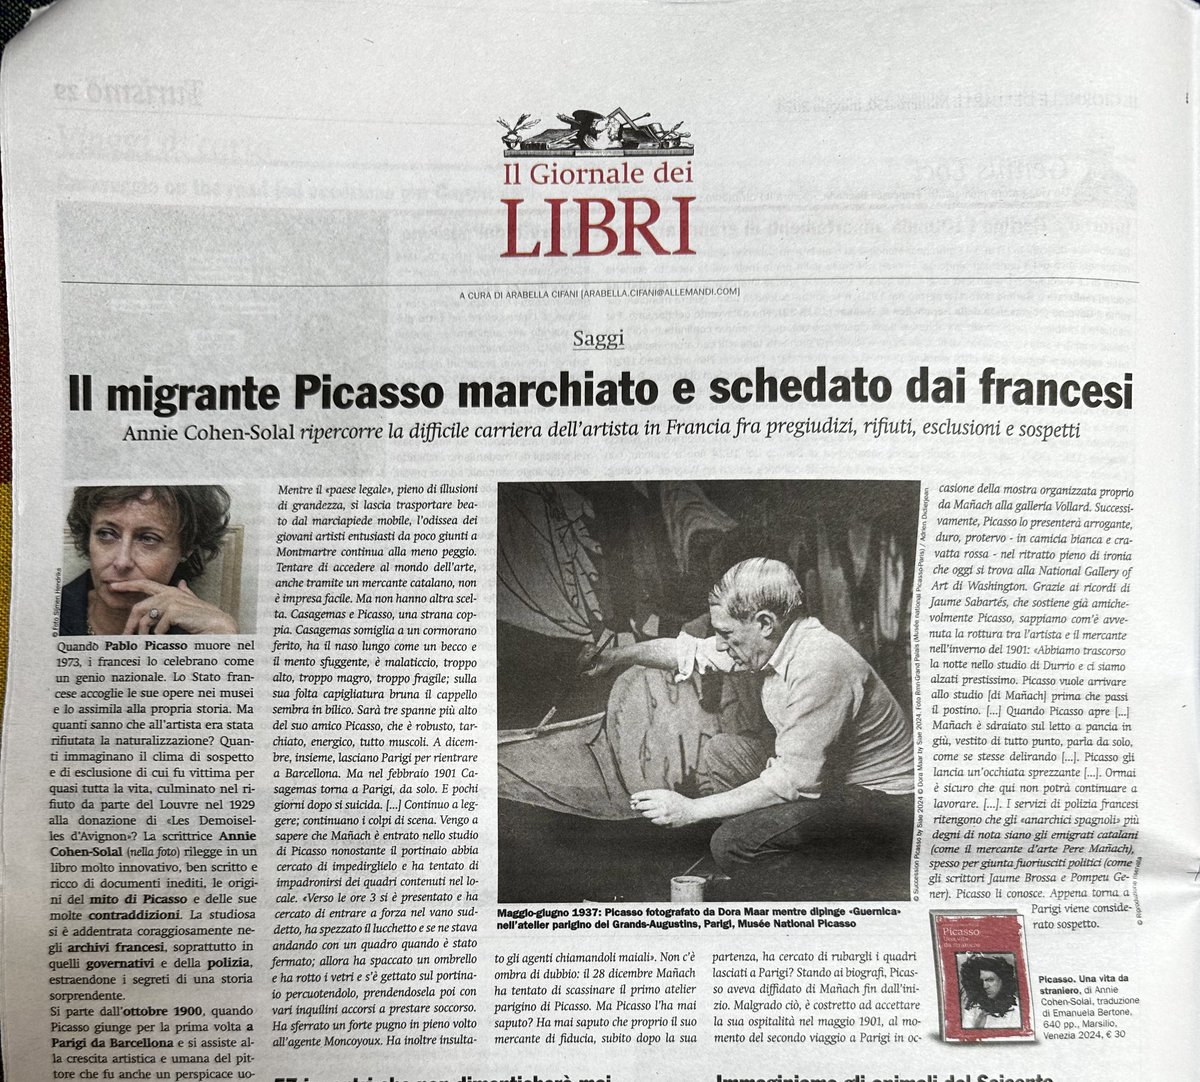 Grazie a @giornaledellArt e La Lettura del @Corriere per le bellissime notizie sul mio libro @MarsilioEditori e sulla mostra @MarsilioArte e Palazzo Reale di Milano